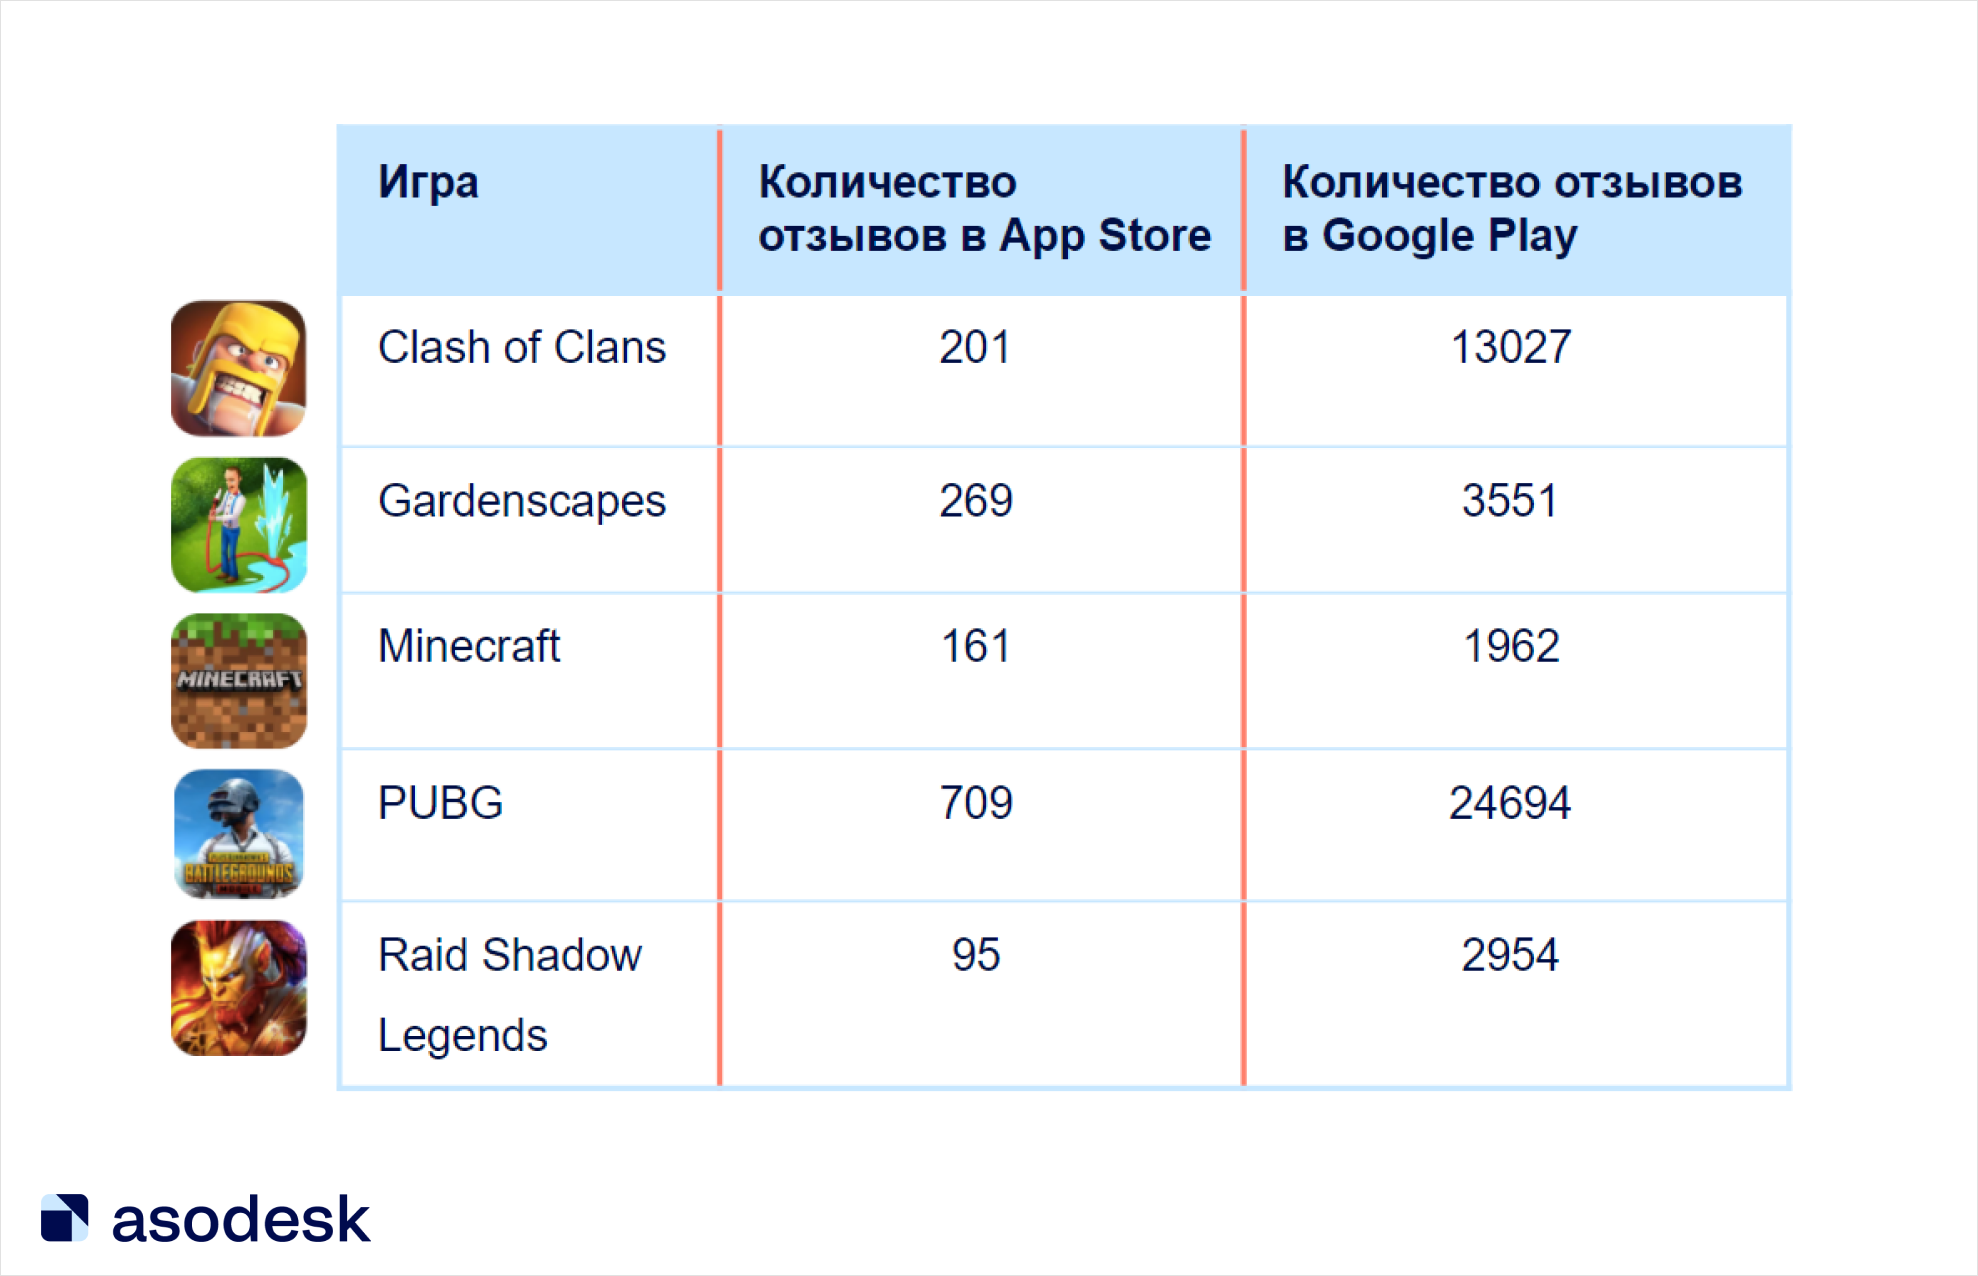 Пользователи Google Play чаще оставляют отзывы на популярные игры